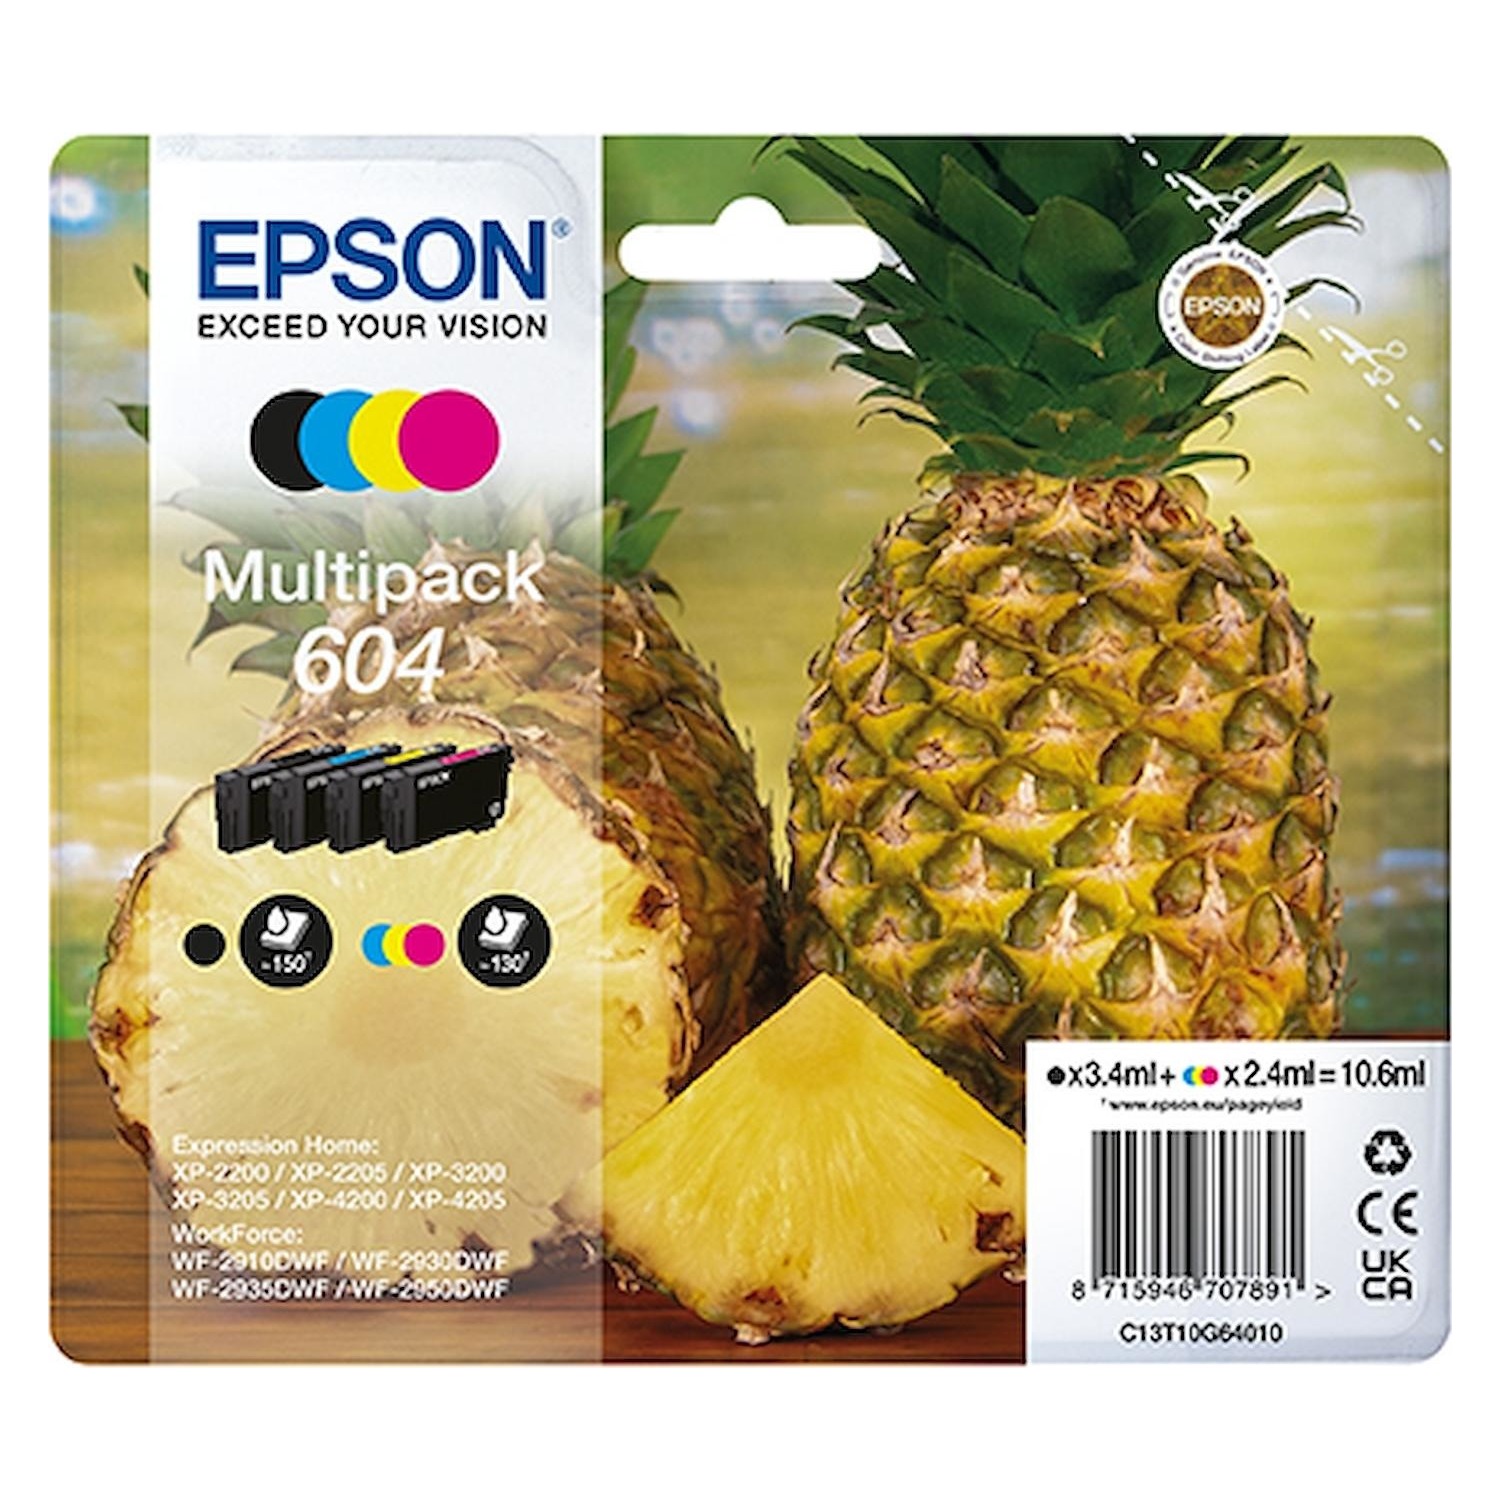 Immagine per Cartuccia multipack Epson serie ananas 604        4 colori da DIMOStore